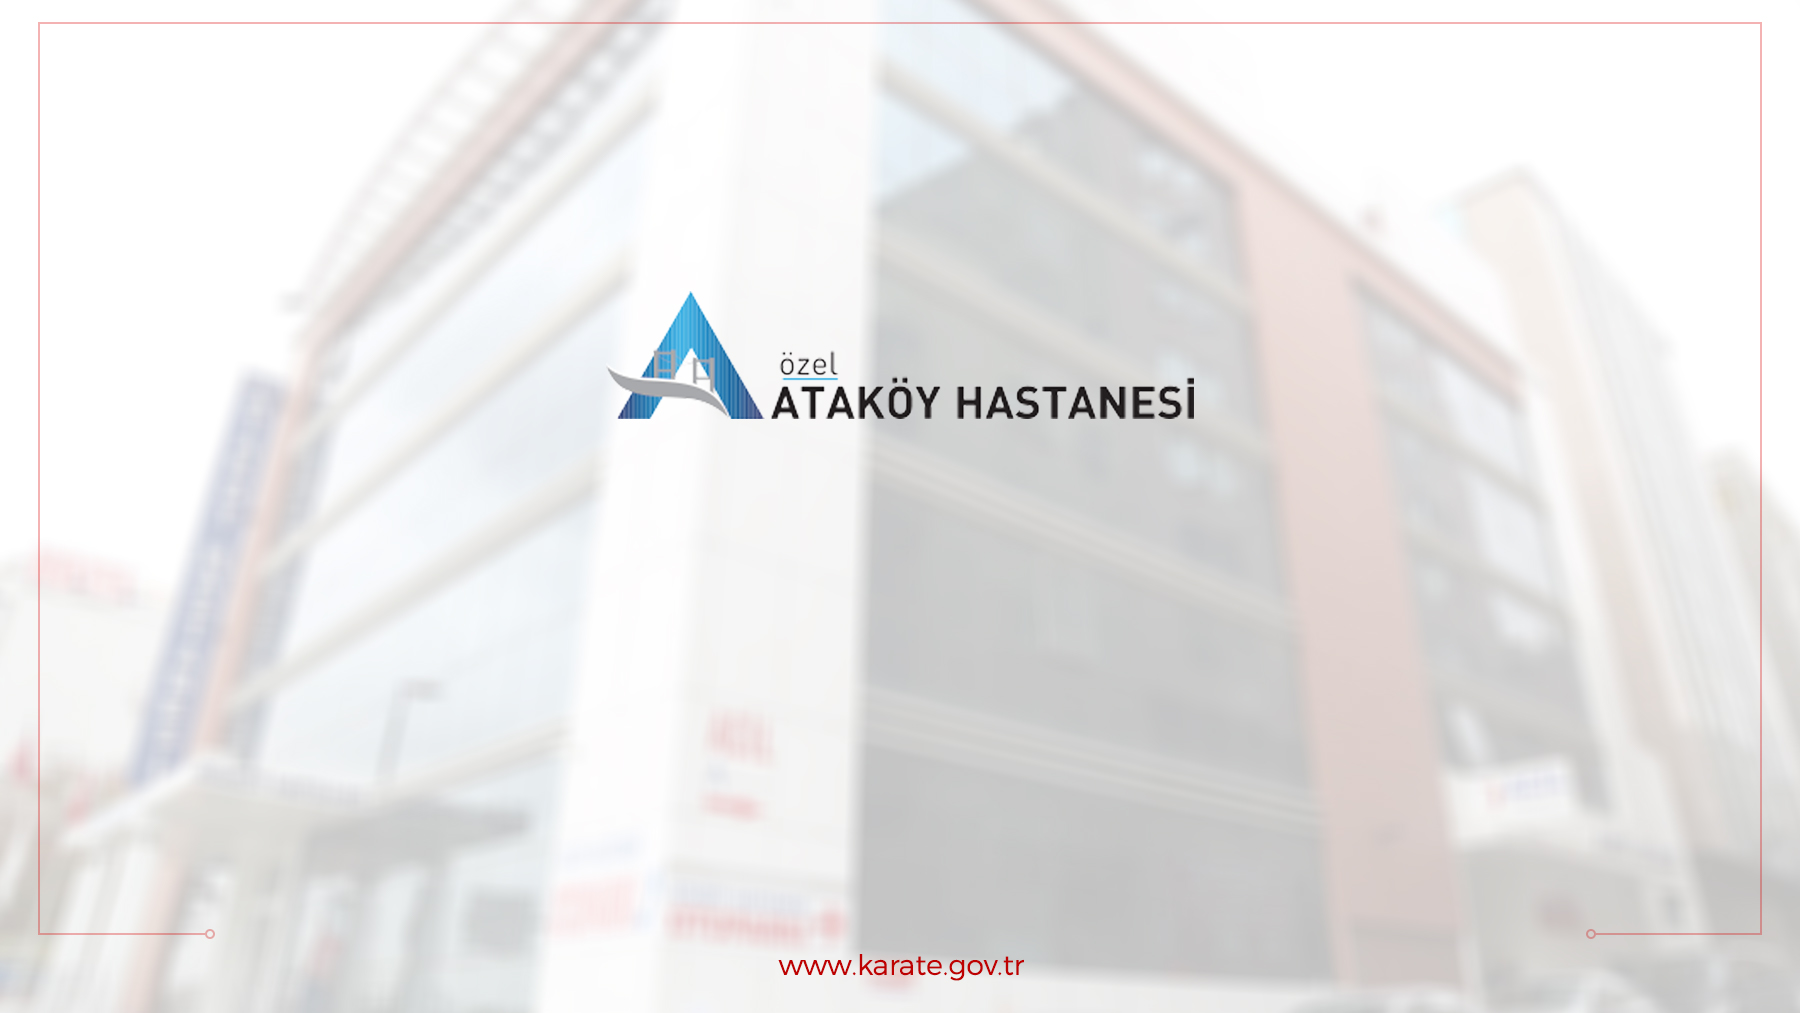 Özel Ataköy Hastanesi ile anlaşma